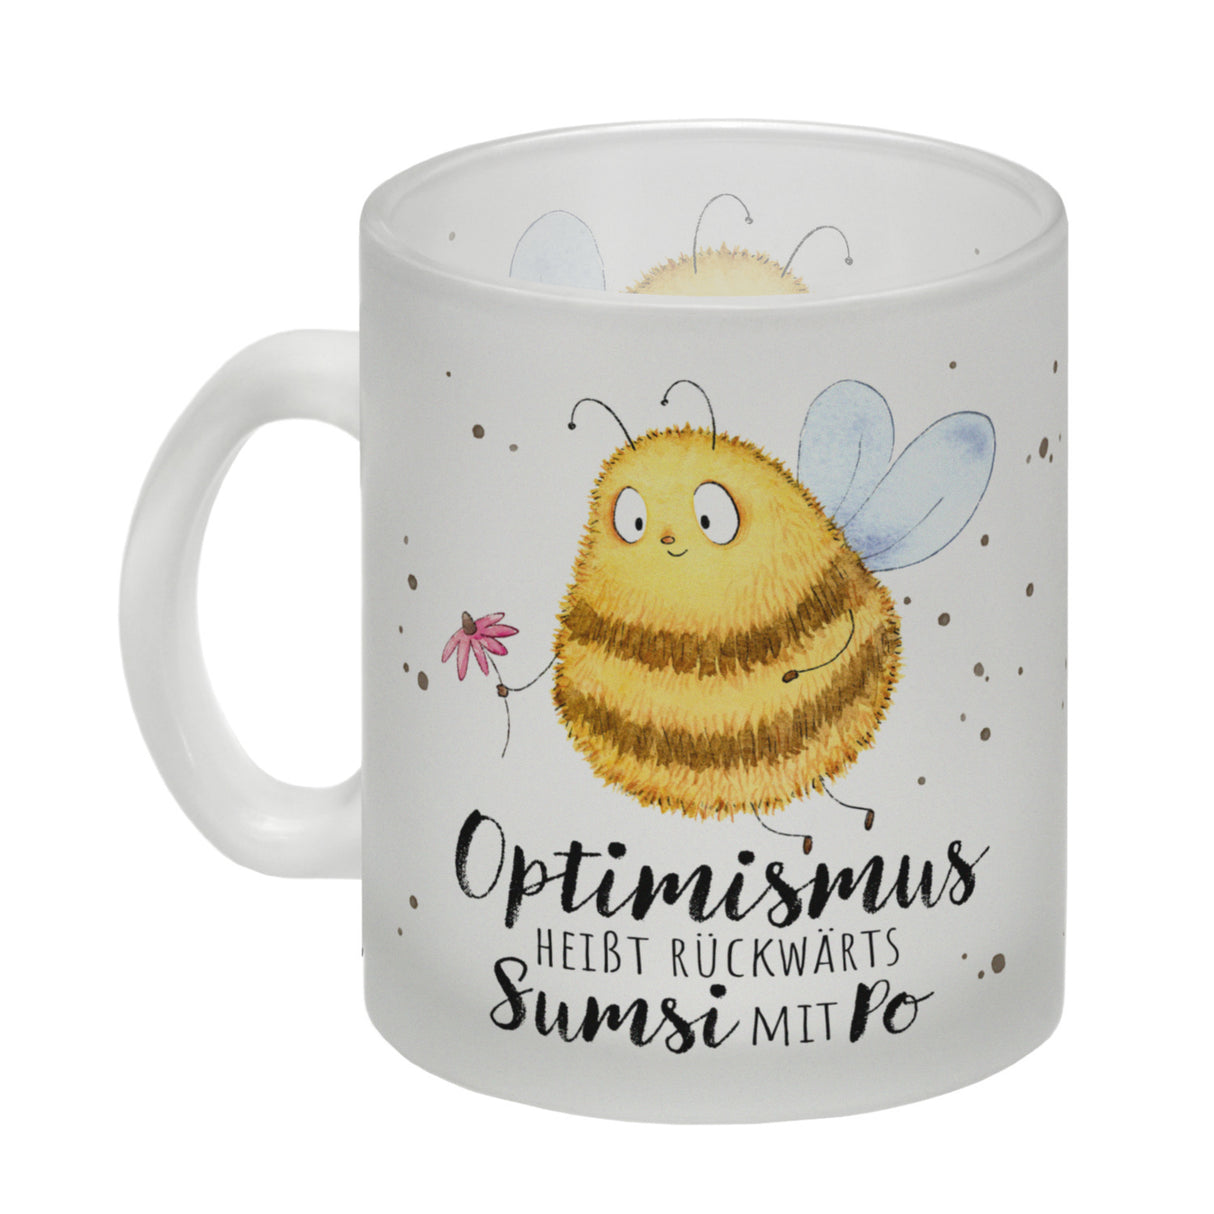 Pummel Biene Kaffeebecher mit Spruch Optimismus heißt rückwärts Sumsi mit Po